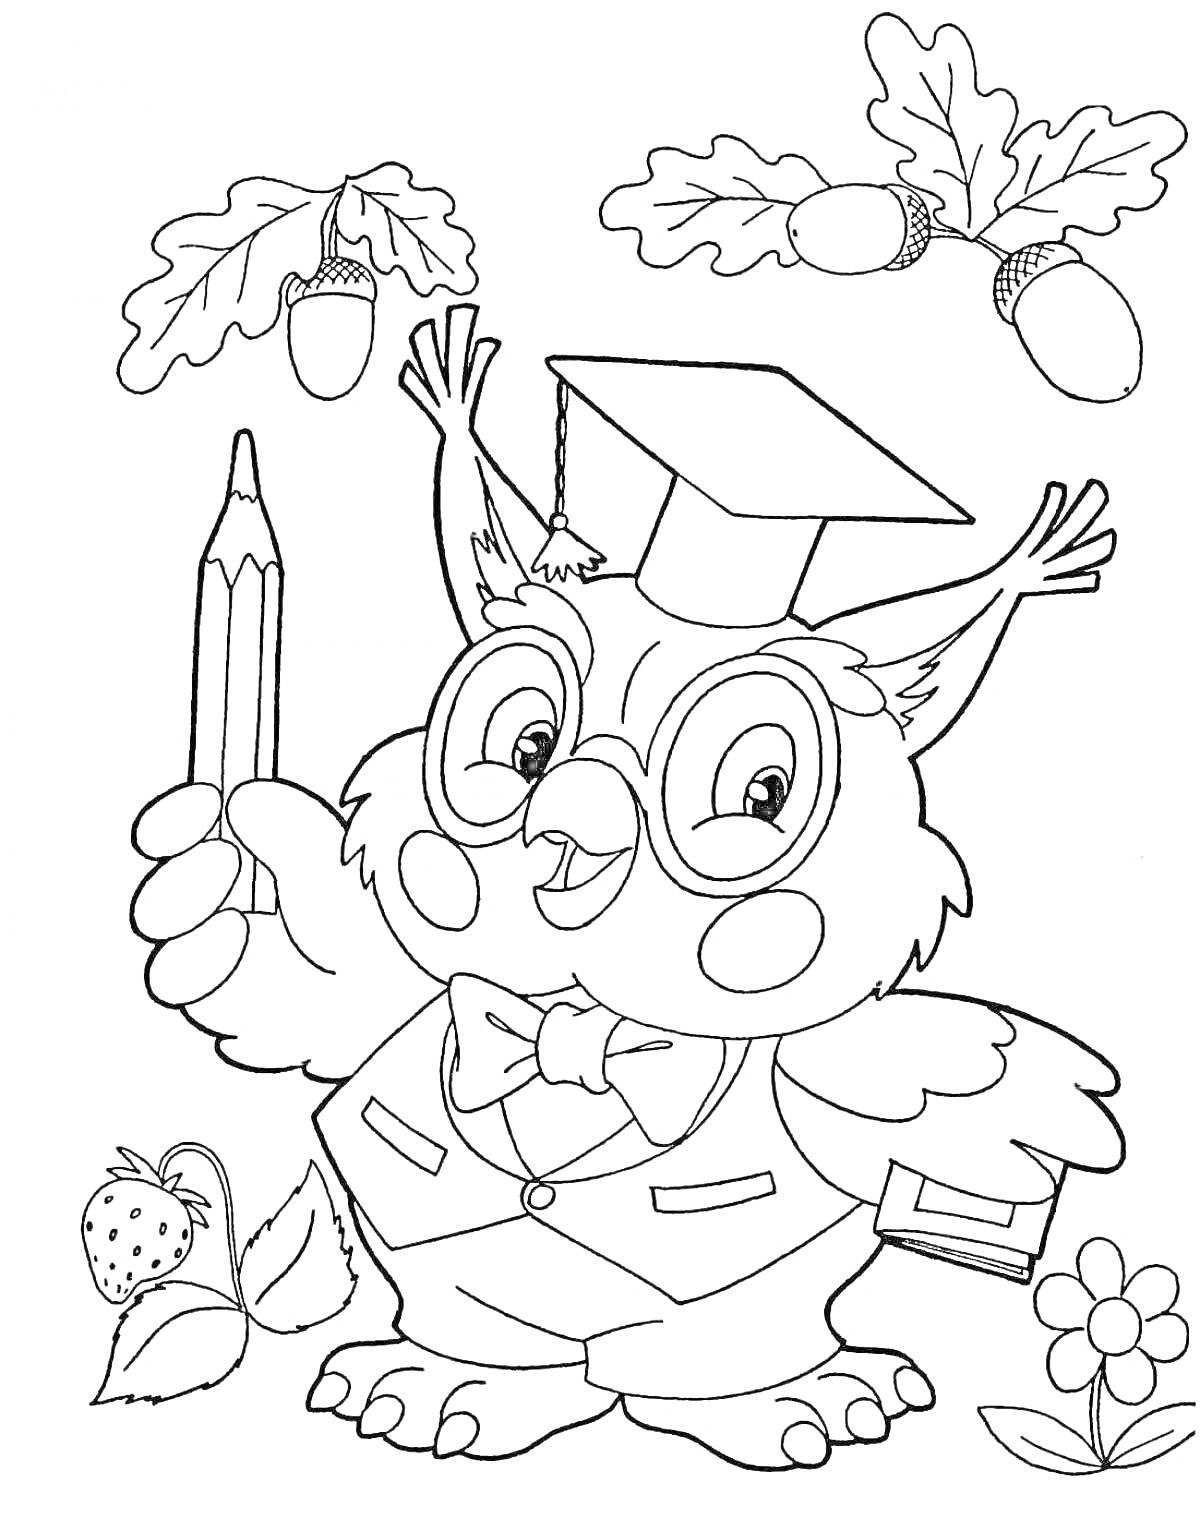 Раскраска Ученая сова с очками и шапочкой, держащая карандаш и книгу, с желудями, цветком и клубникой